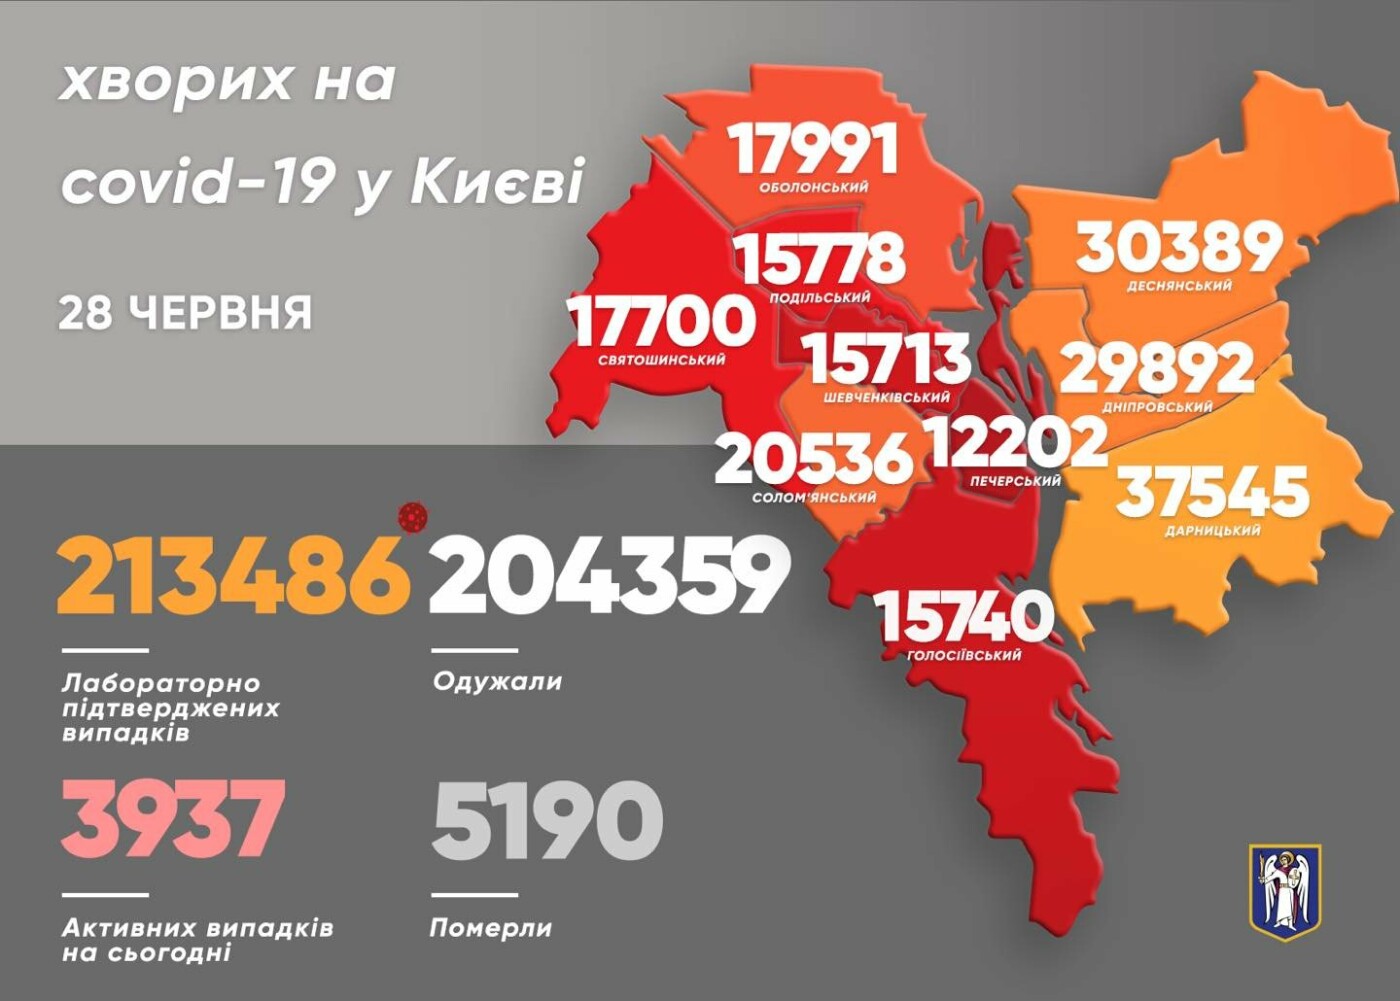 Ни одного летального случая: появилась статистика коронавируса в Киеве за последние сутки